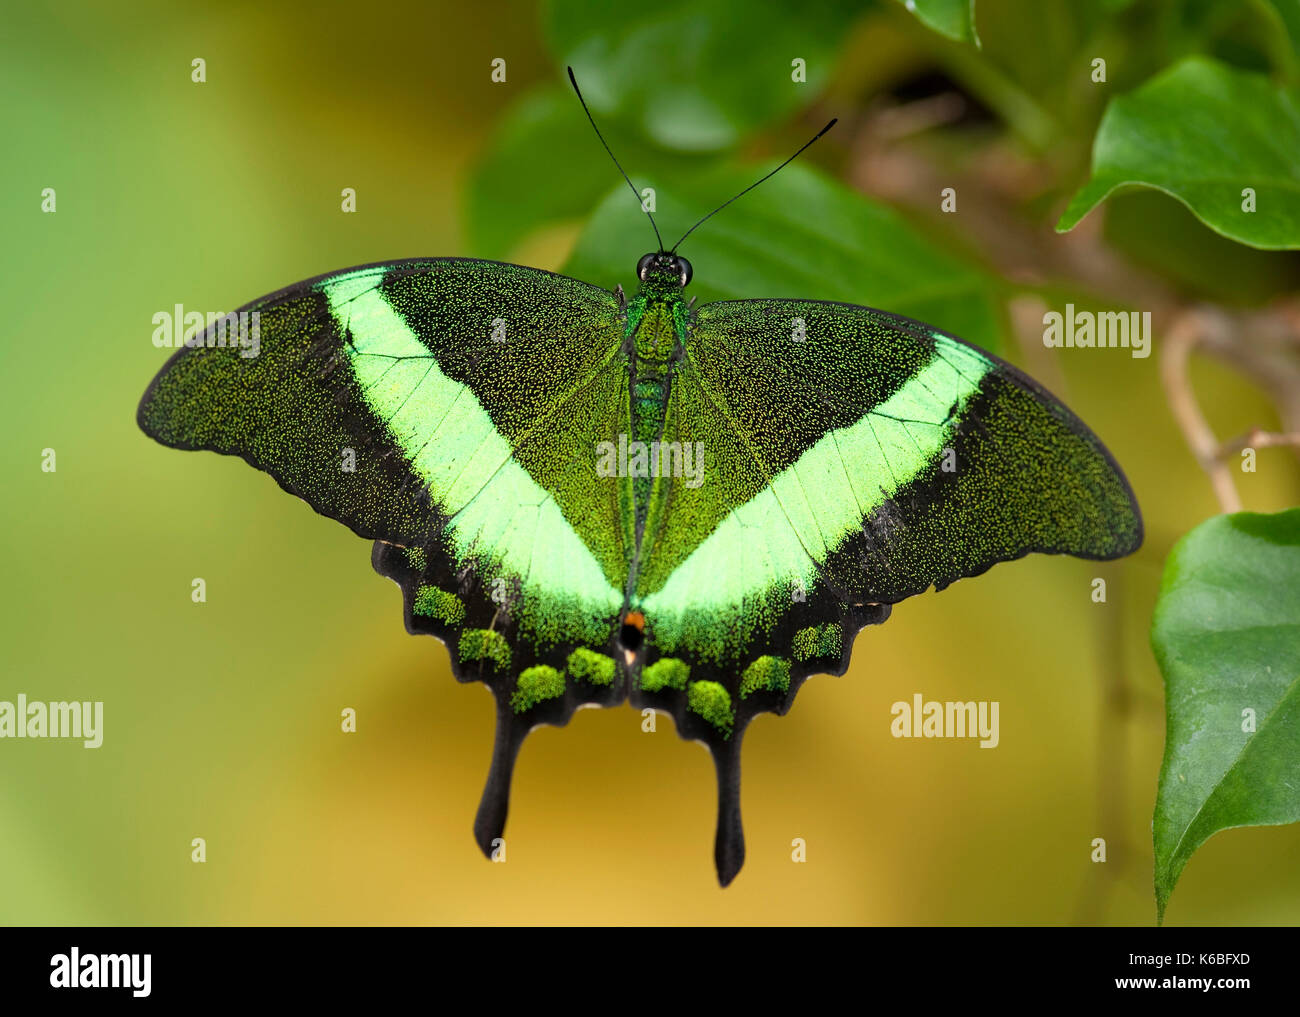 Emerald Schwalbenschwanz Schmetterling, Papilio Palinurus-arten, Südasien, ruht mit Flügeln öffnen, Farbe grün Stockfoto